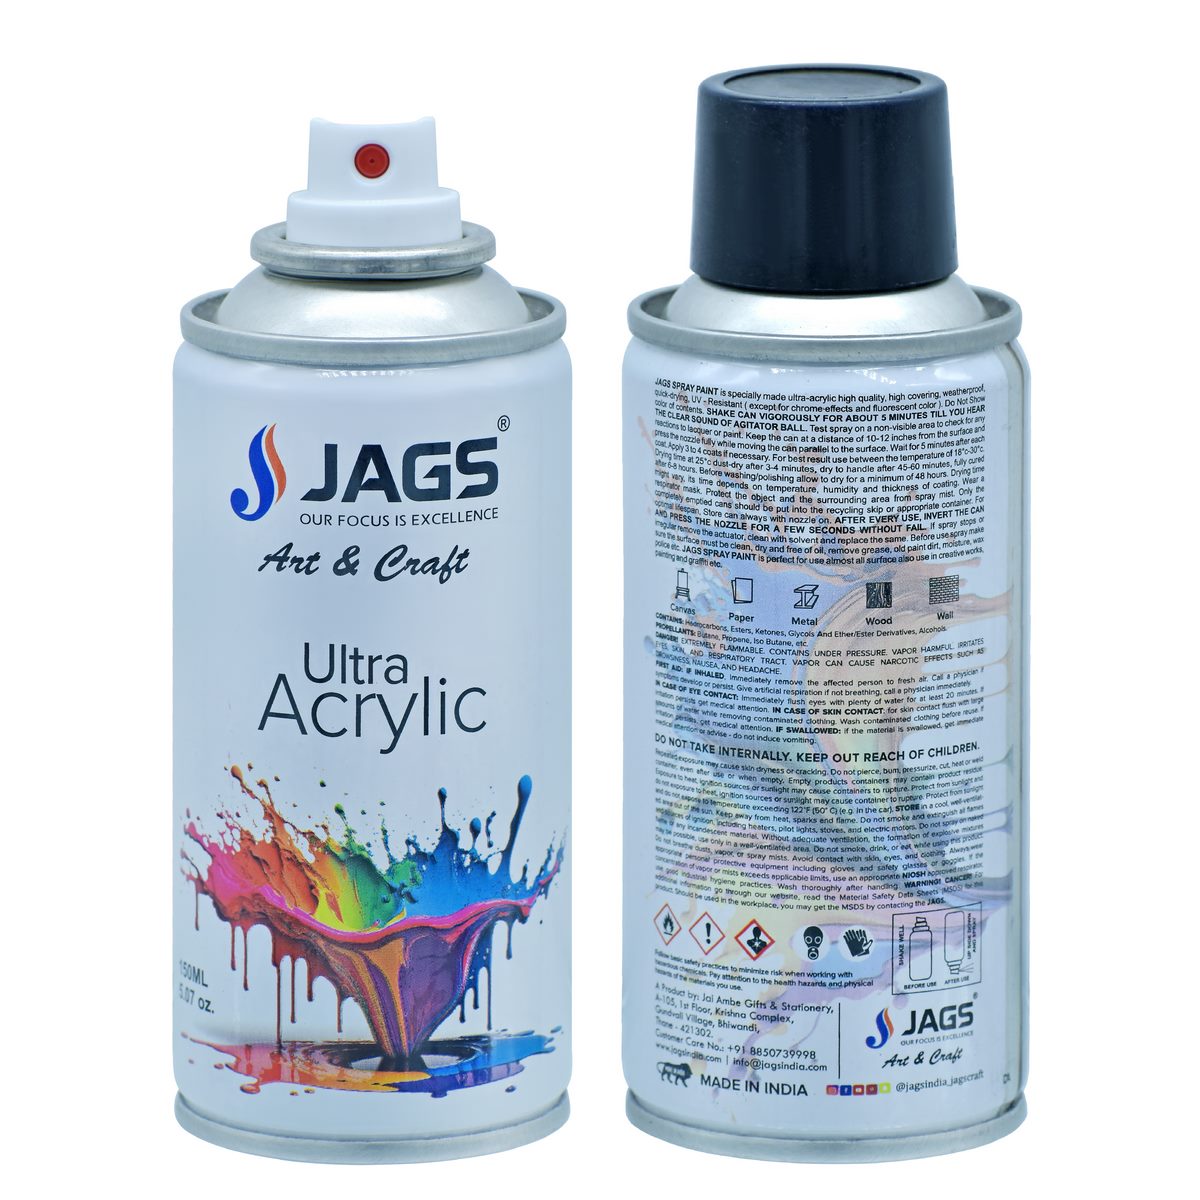 jags-mumbai Paint & Colours Crystal Clear Brilliance: Spray Ultra Acrylic 150ml Clear Glossy - Contain 1 Unit